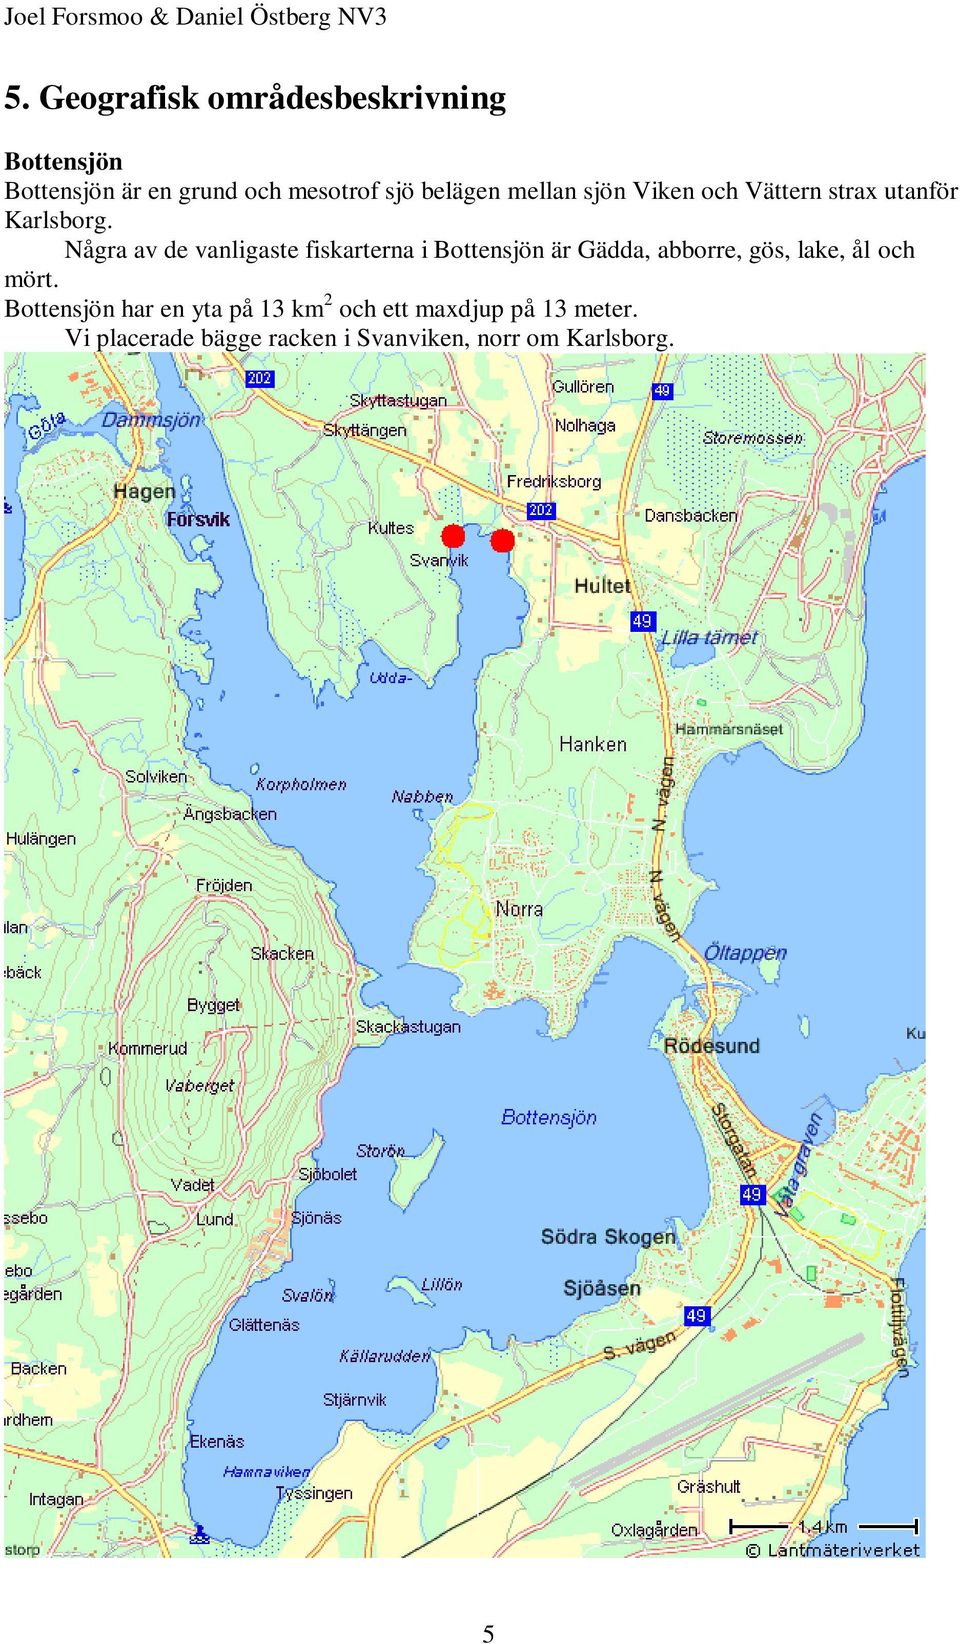 sjön iken och ättern strax utanför Karlsborg.